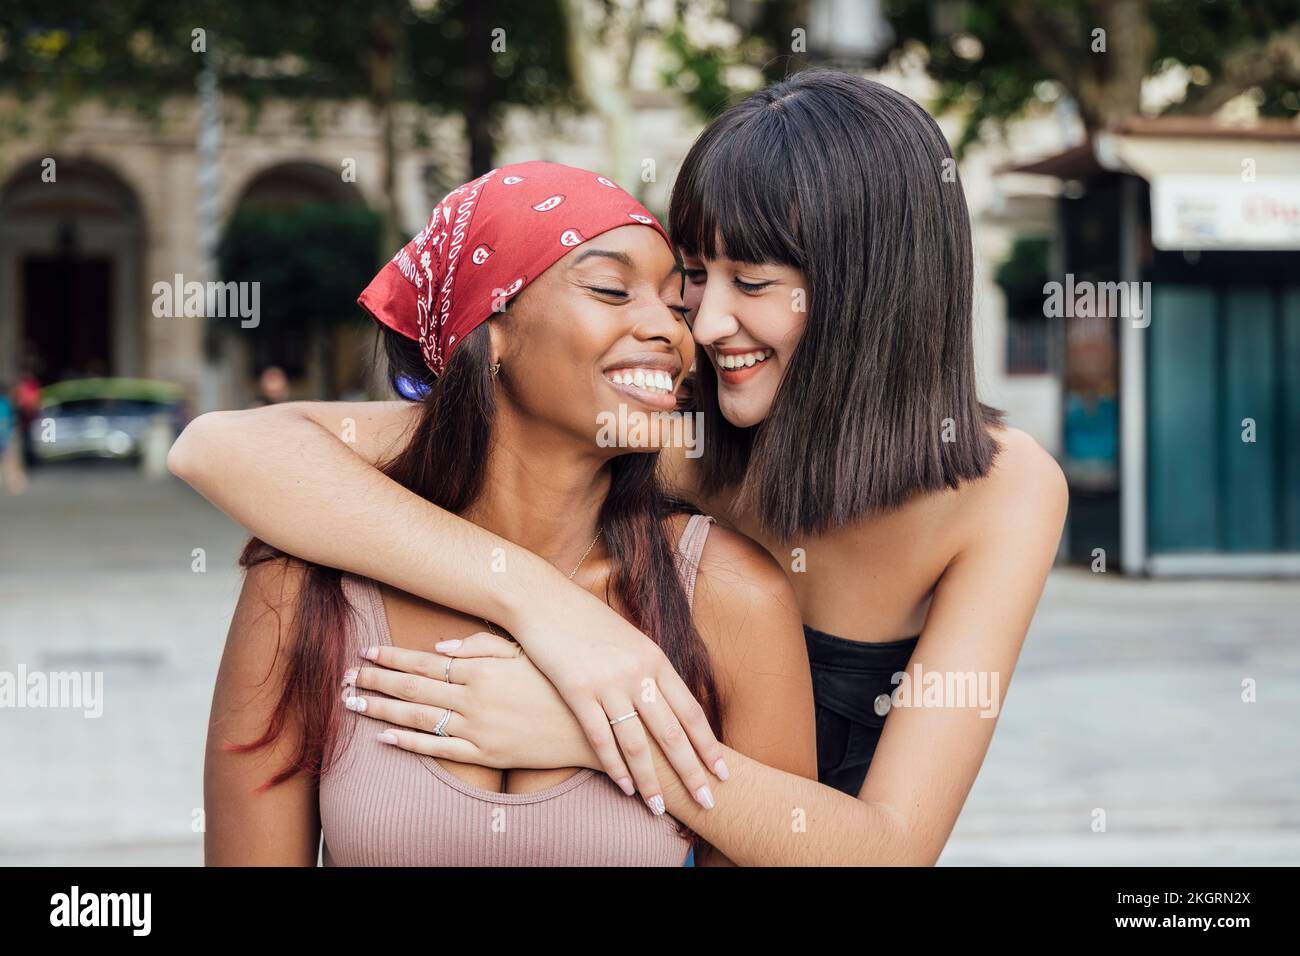 Lächelnde junge Frau, die eine Freundin auf dem Fußweg umarmt Stockfoto